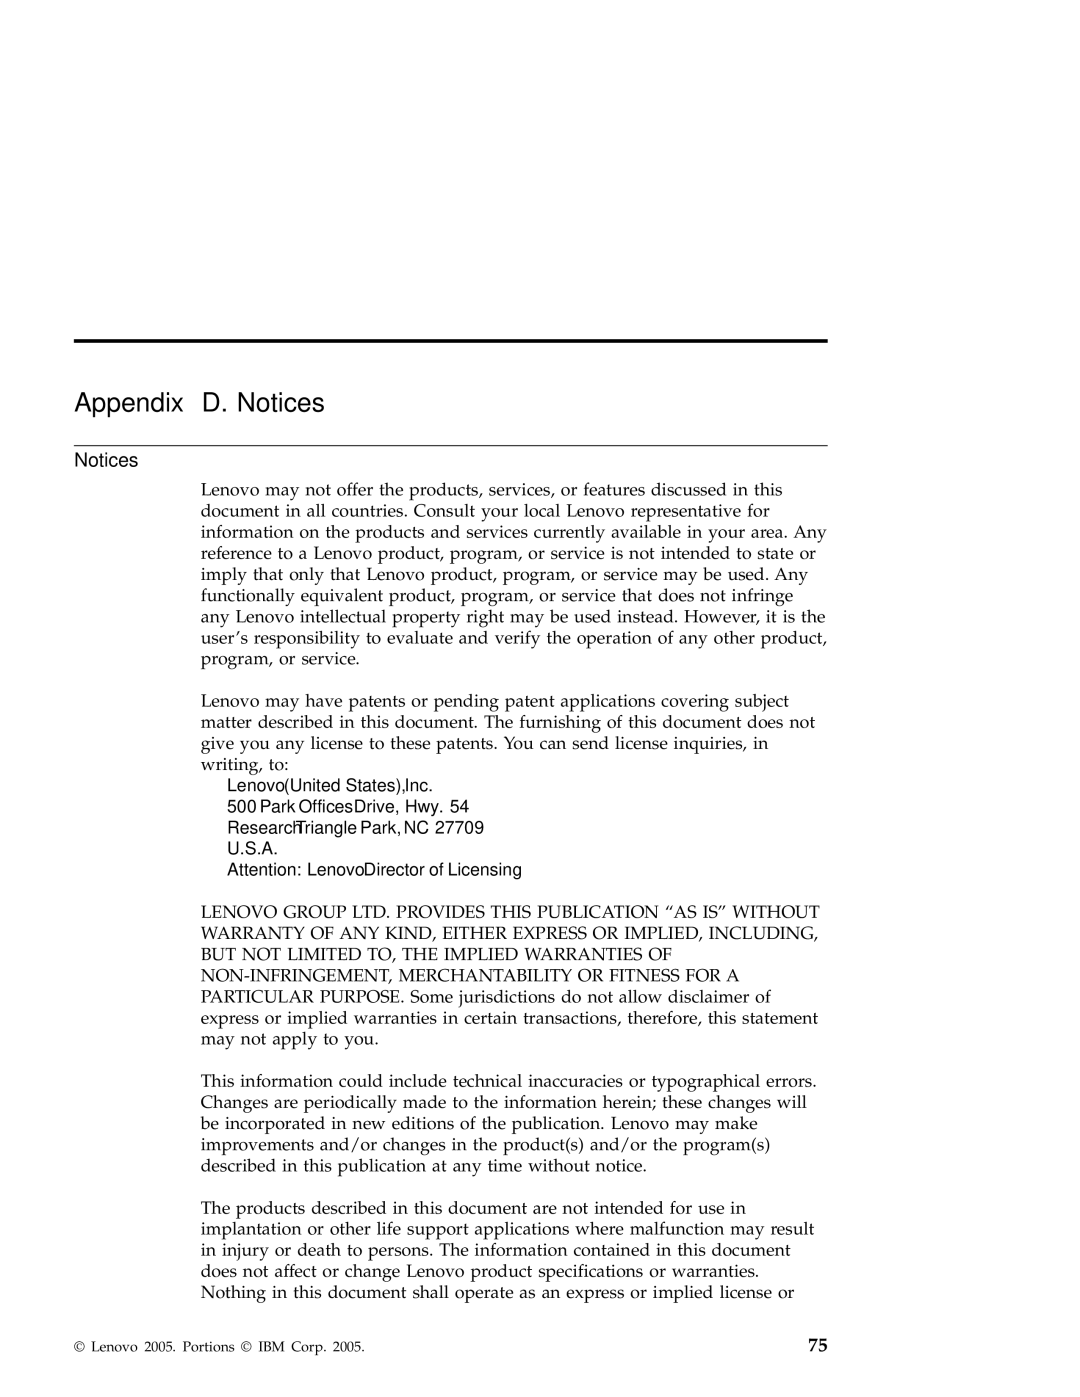 Lenovo X41 manual Appendix D. Notices 